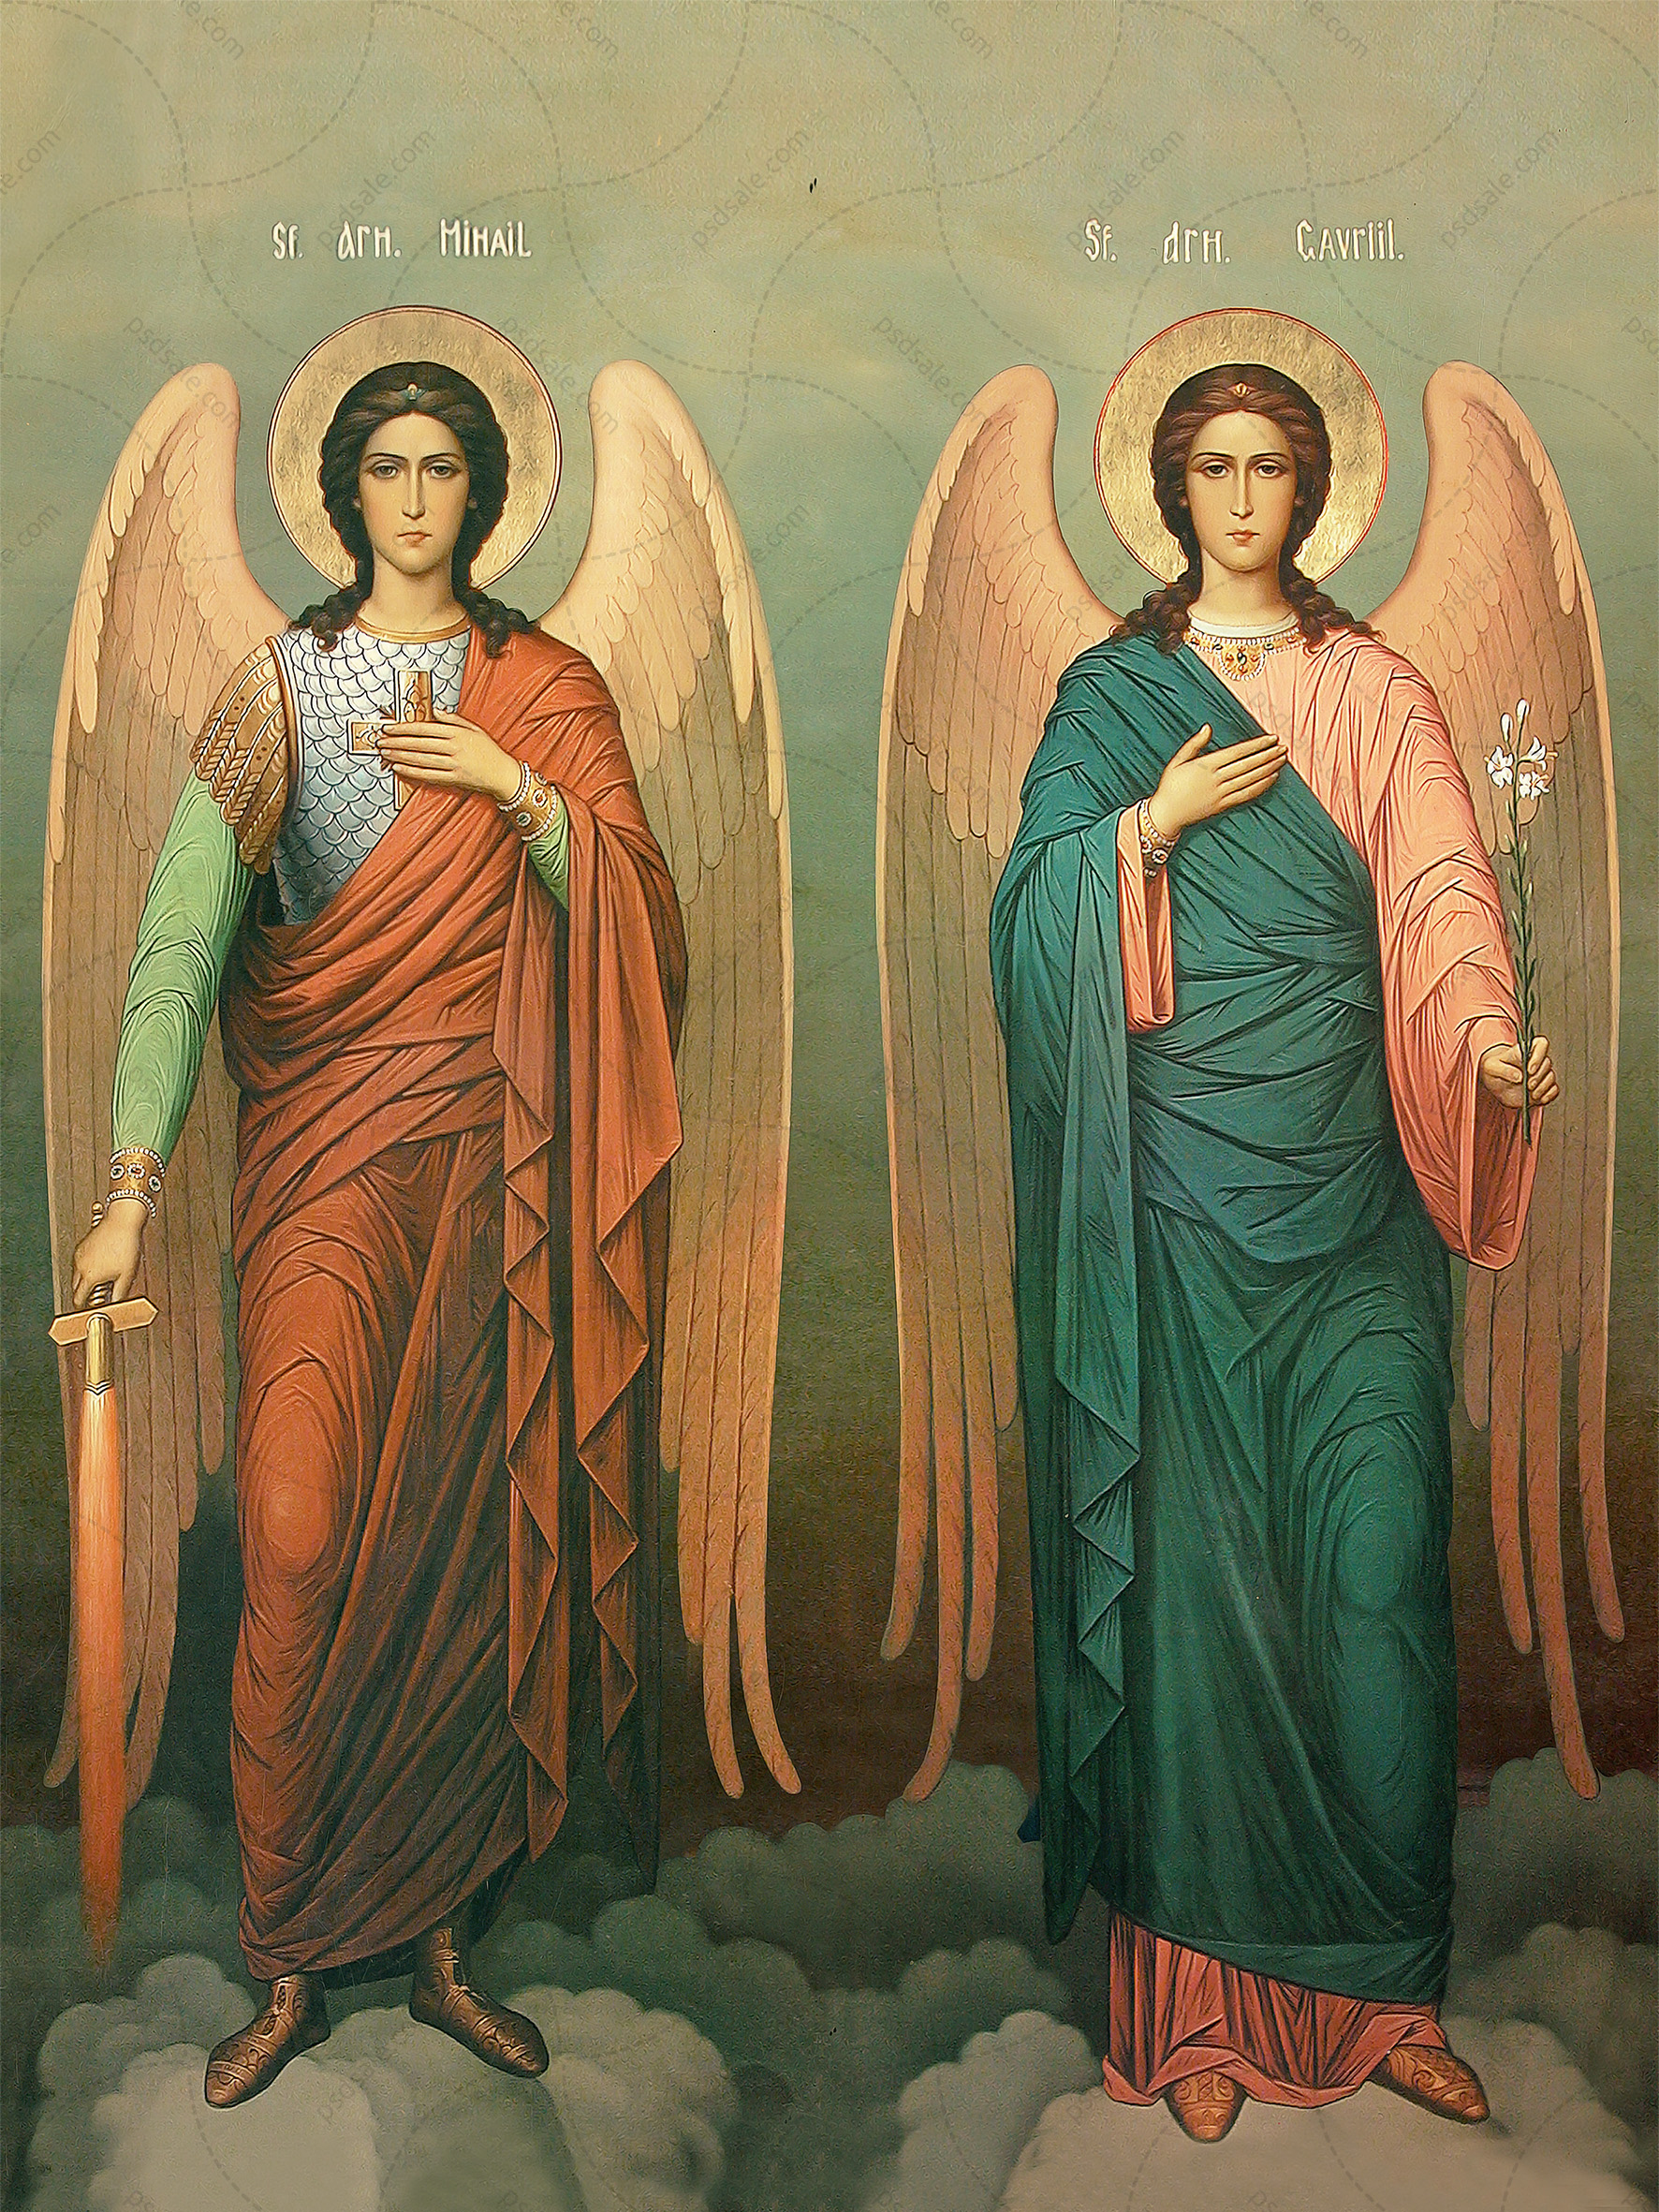 Иконы святых архангелов. Икона Архангела Михаила и Гавриила.